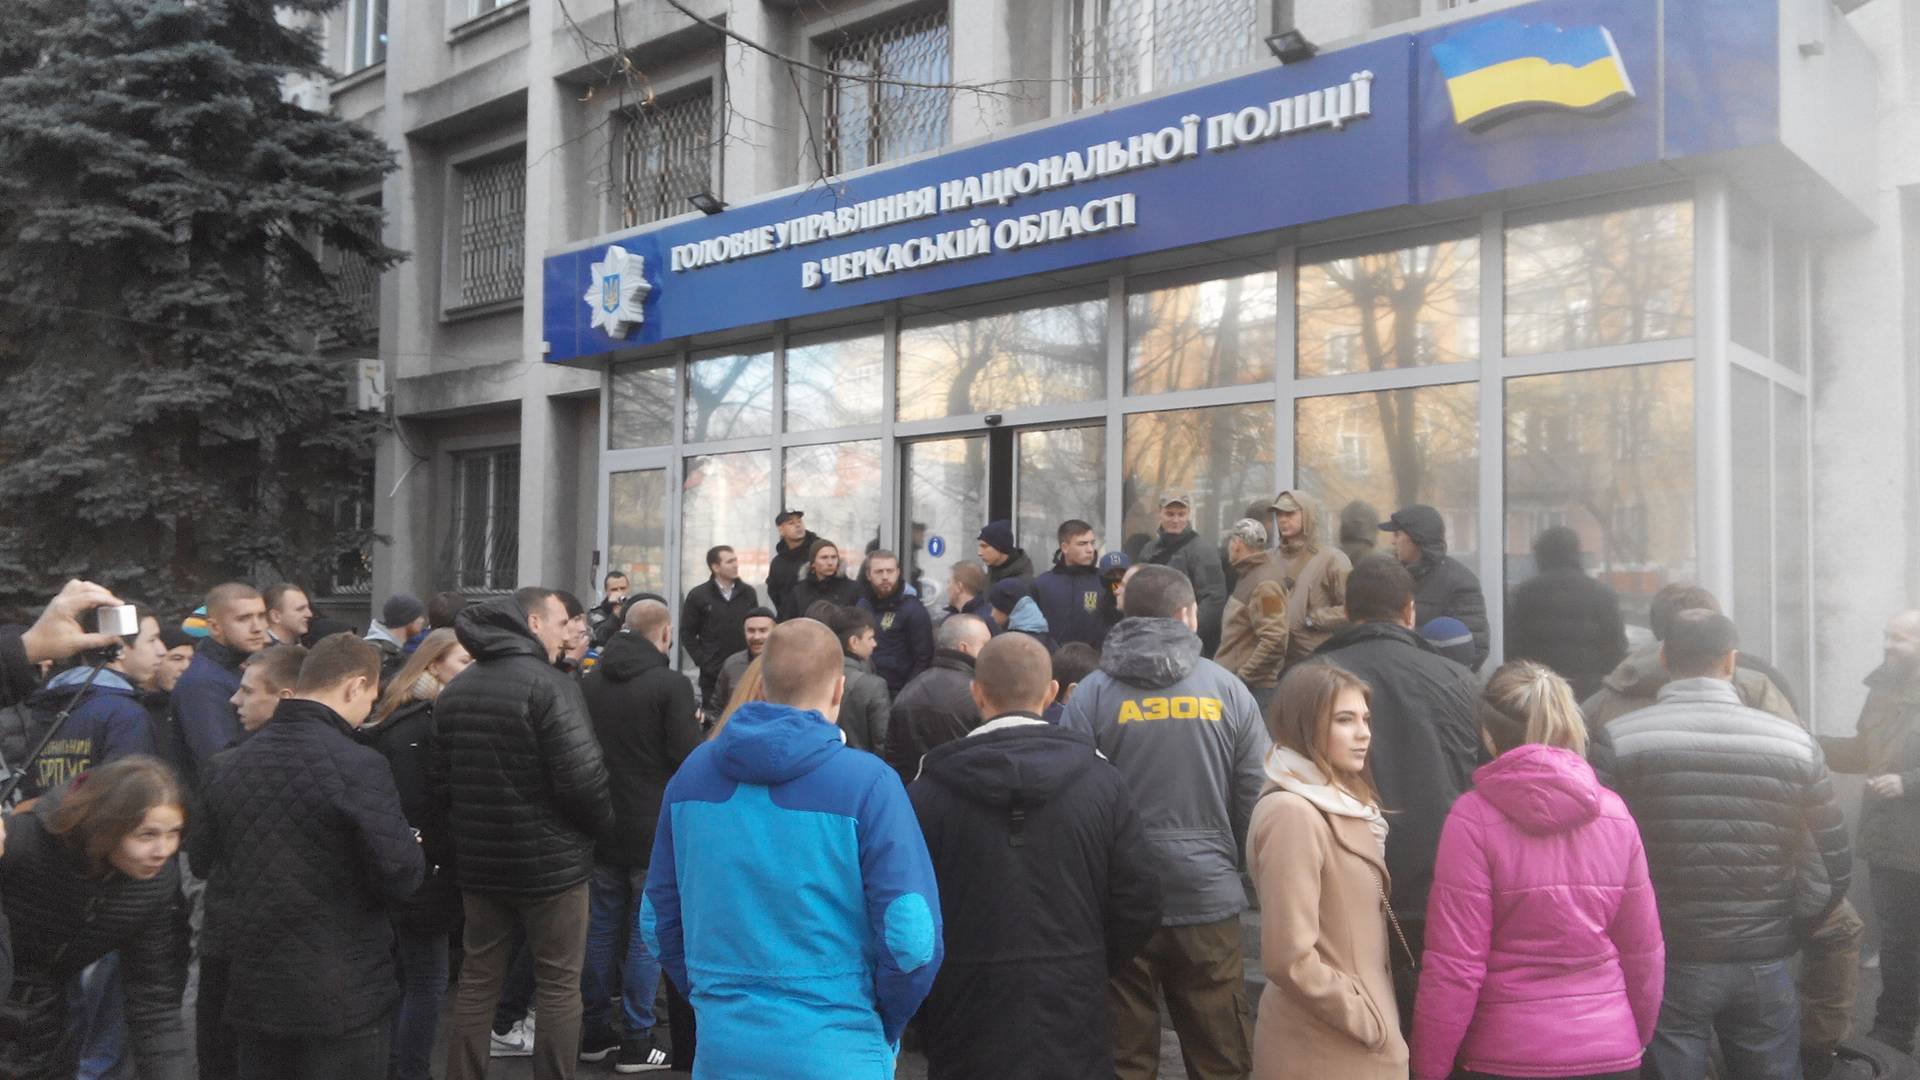 В Черкассах опять столкновения: отделение полиции взяли штурмом, выдвинули требования